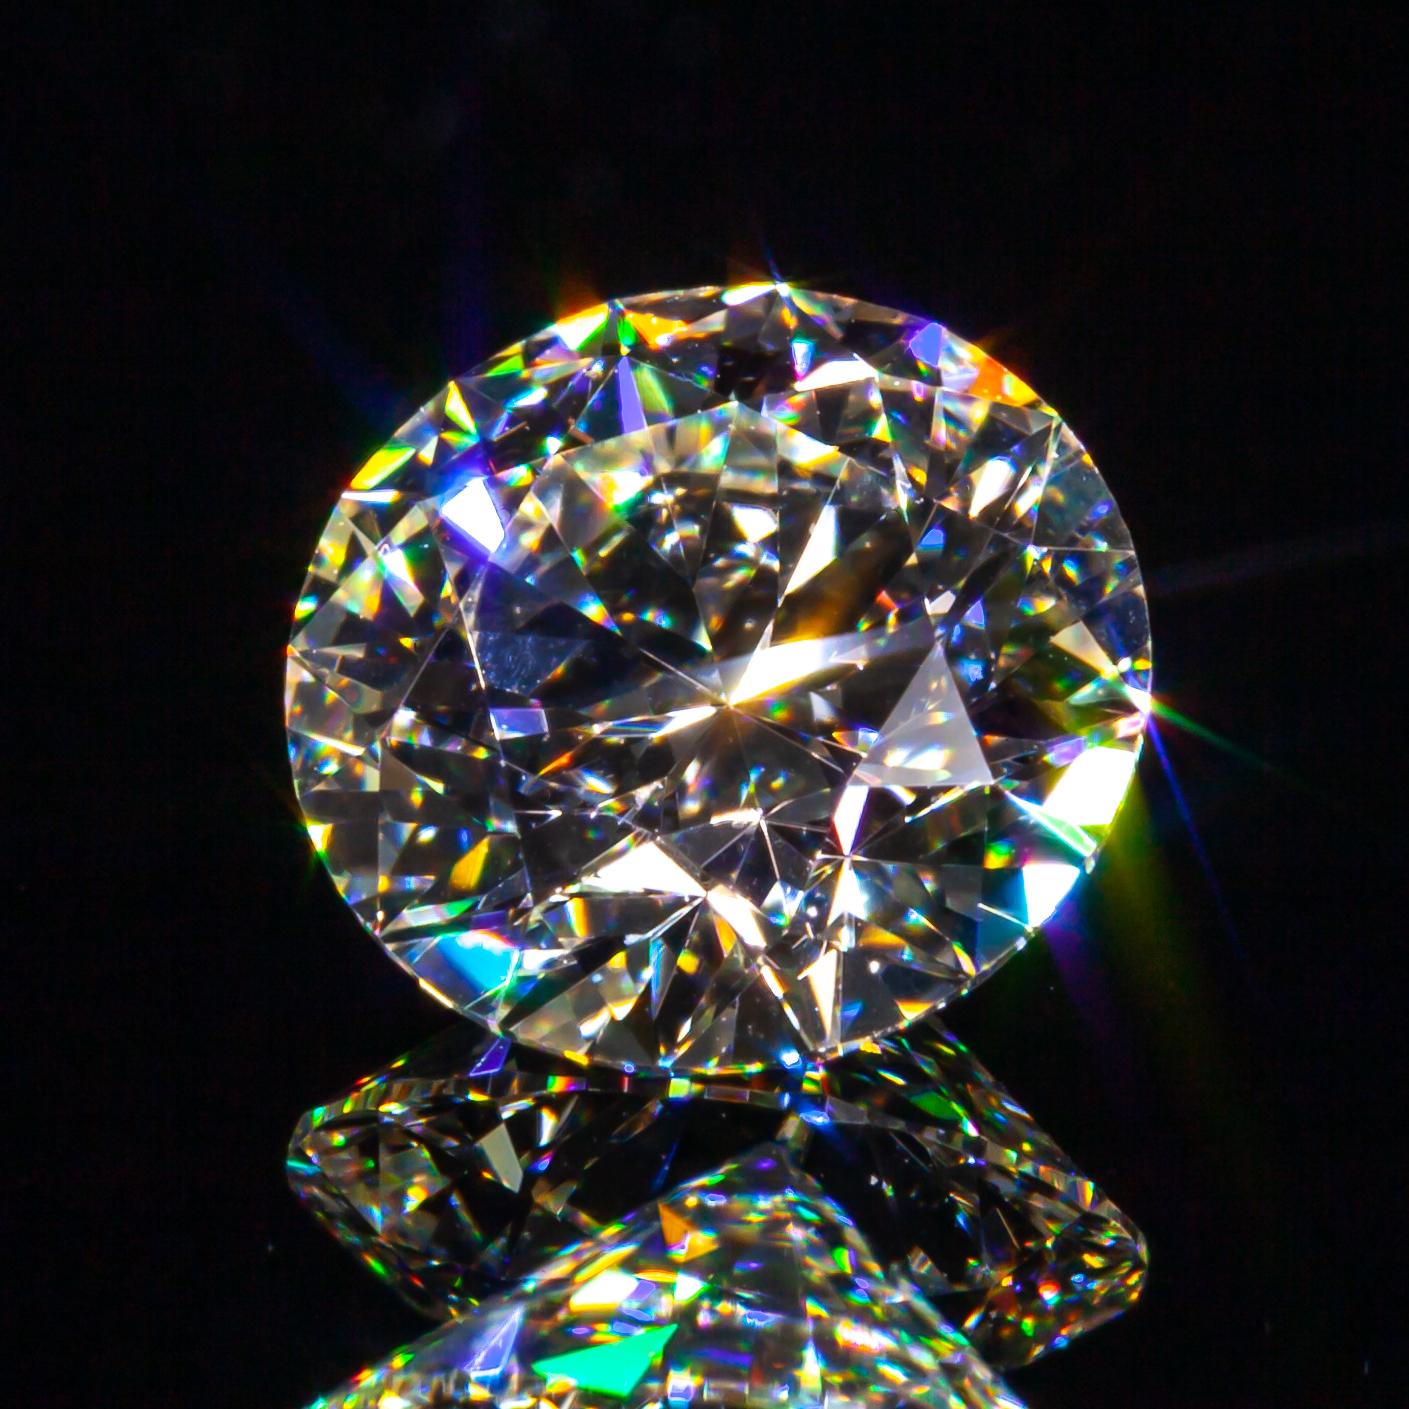 0,72 Karat Loser J / VVS2 Runder Brillantschliff Diamant GIA zertifiziert

Diamant Allgemeine Informationen
Diamant-Schliff: Runder Brillant
Abmessungen: 5.86  x  5.83  -  3.51 mm

Ergebnisse der Diamantklassifizierung
Karat Gewicht:0.72
Farbe Grad: